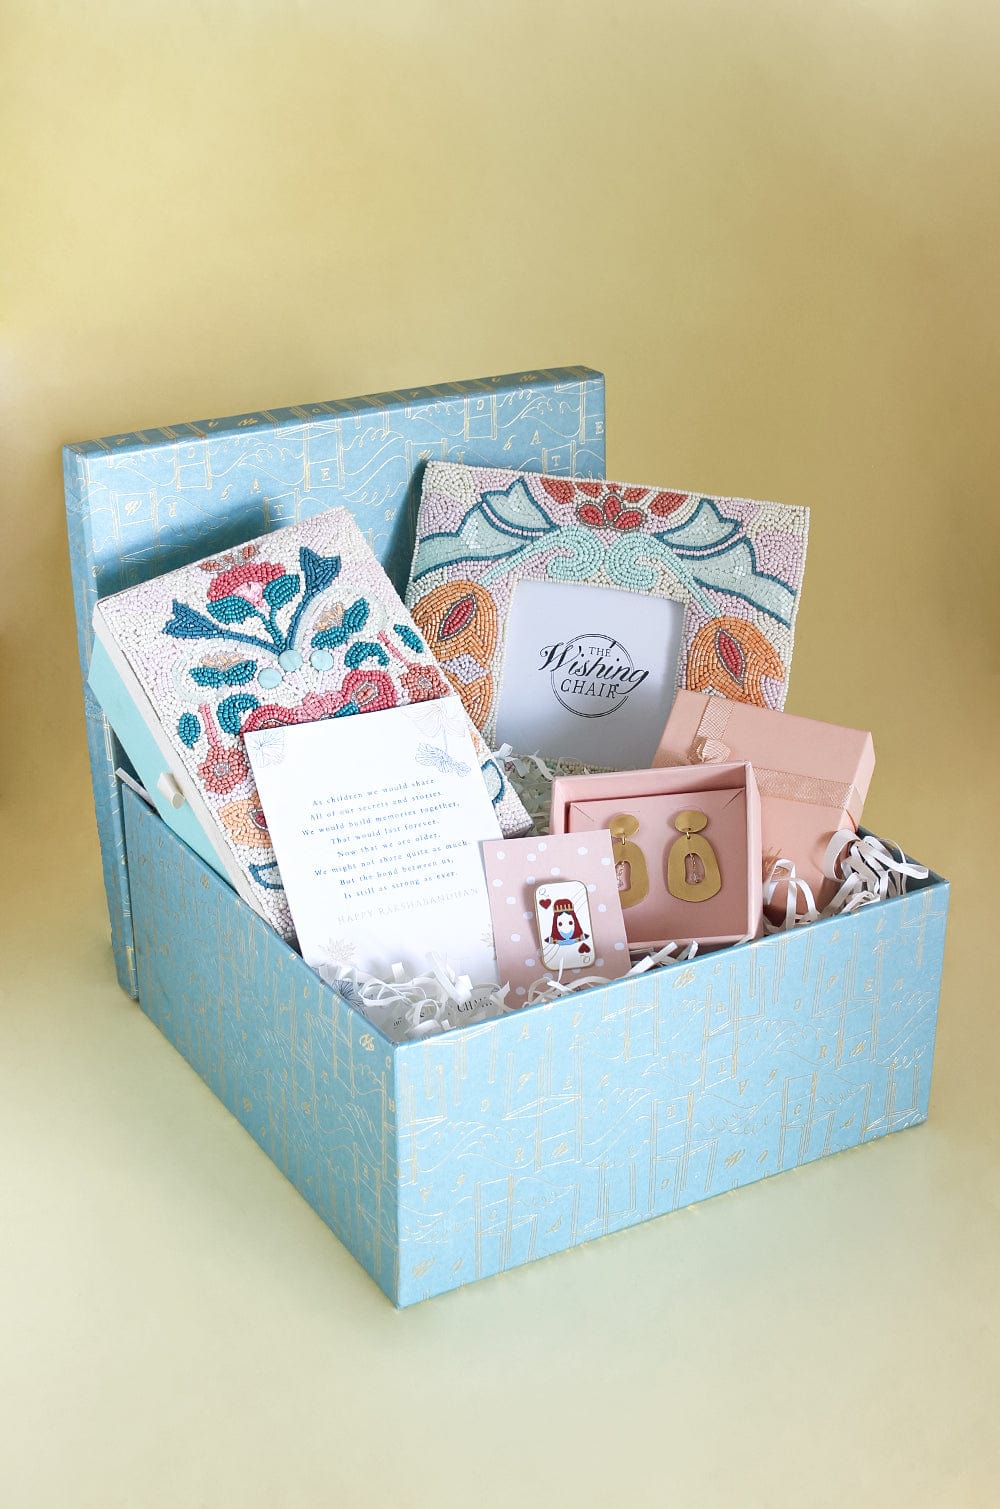 The Resplendent Gift Box